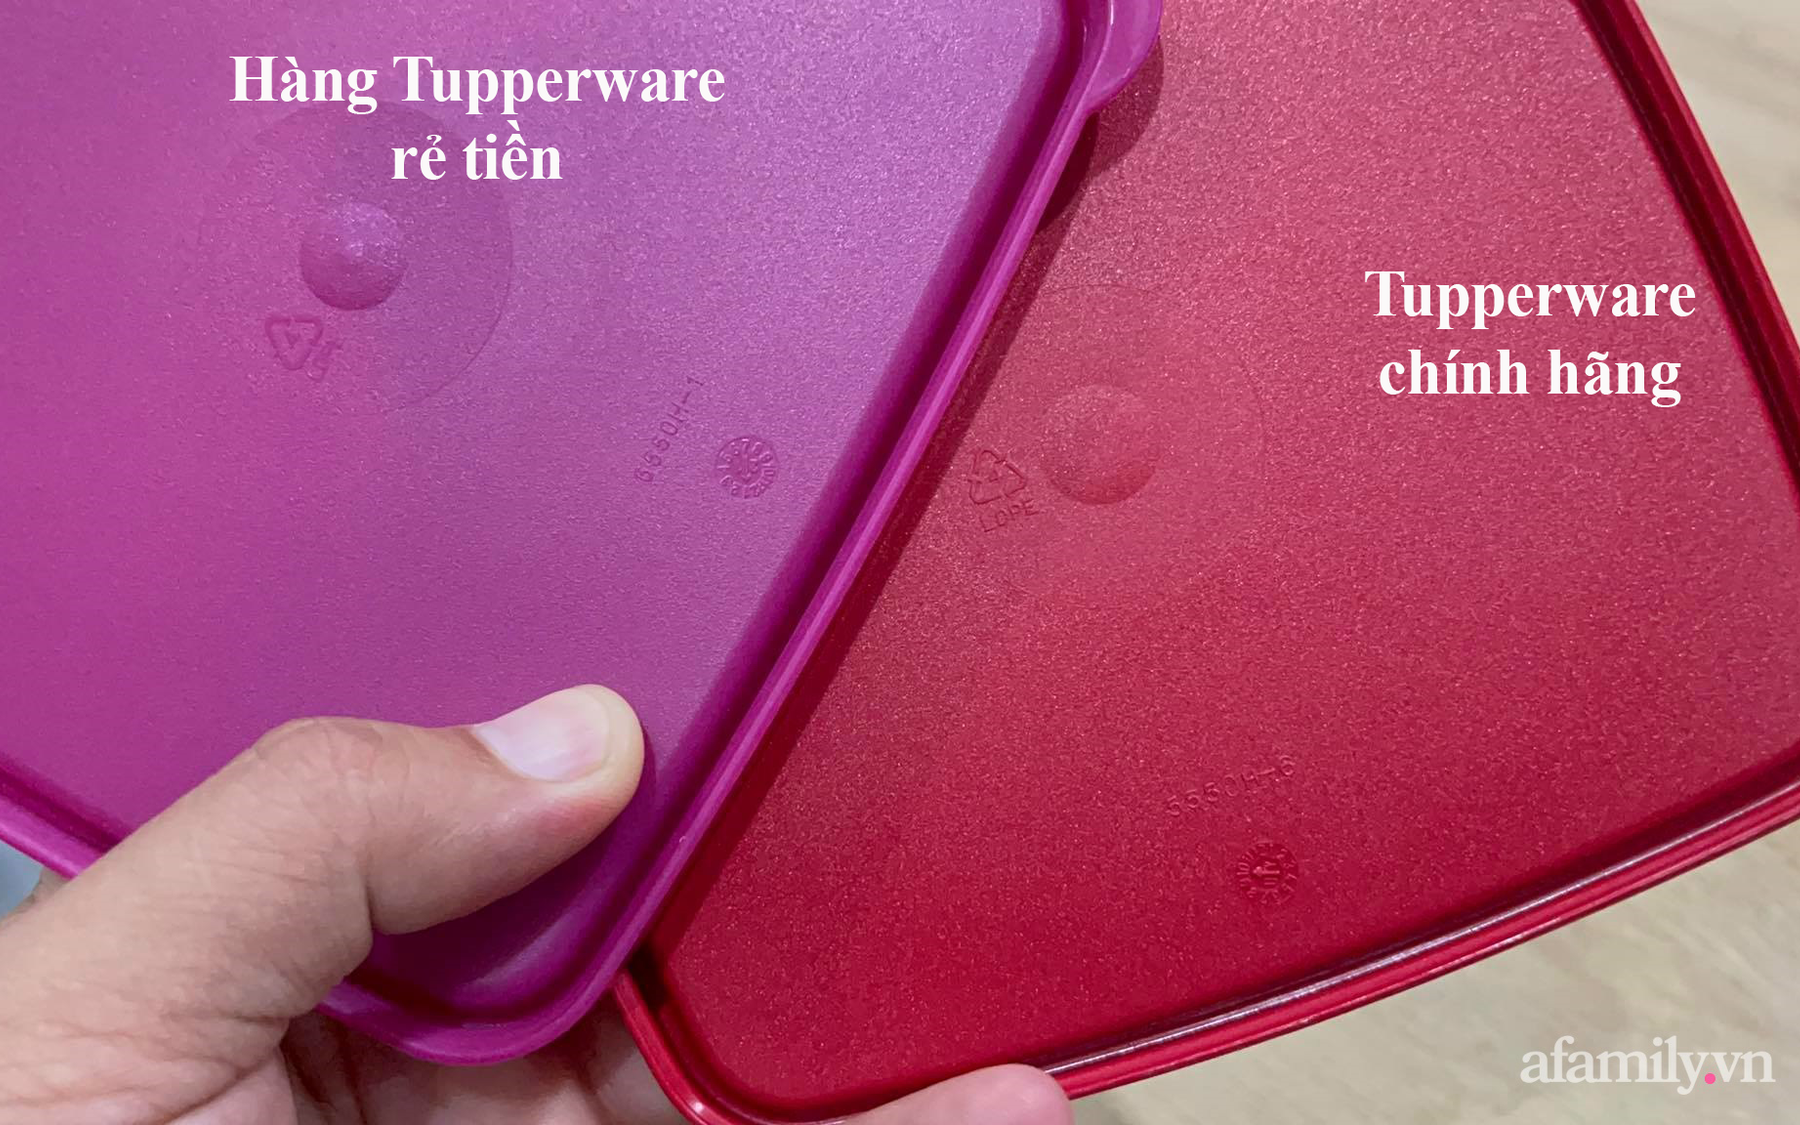 Chỉ nhanh cách phân biệt thật giả giữa hàng ngàn sản phẩm Tupperware đang "sale tụt nóc" trên chợ mạng